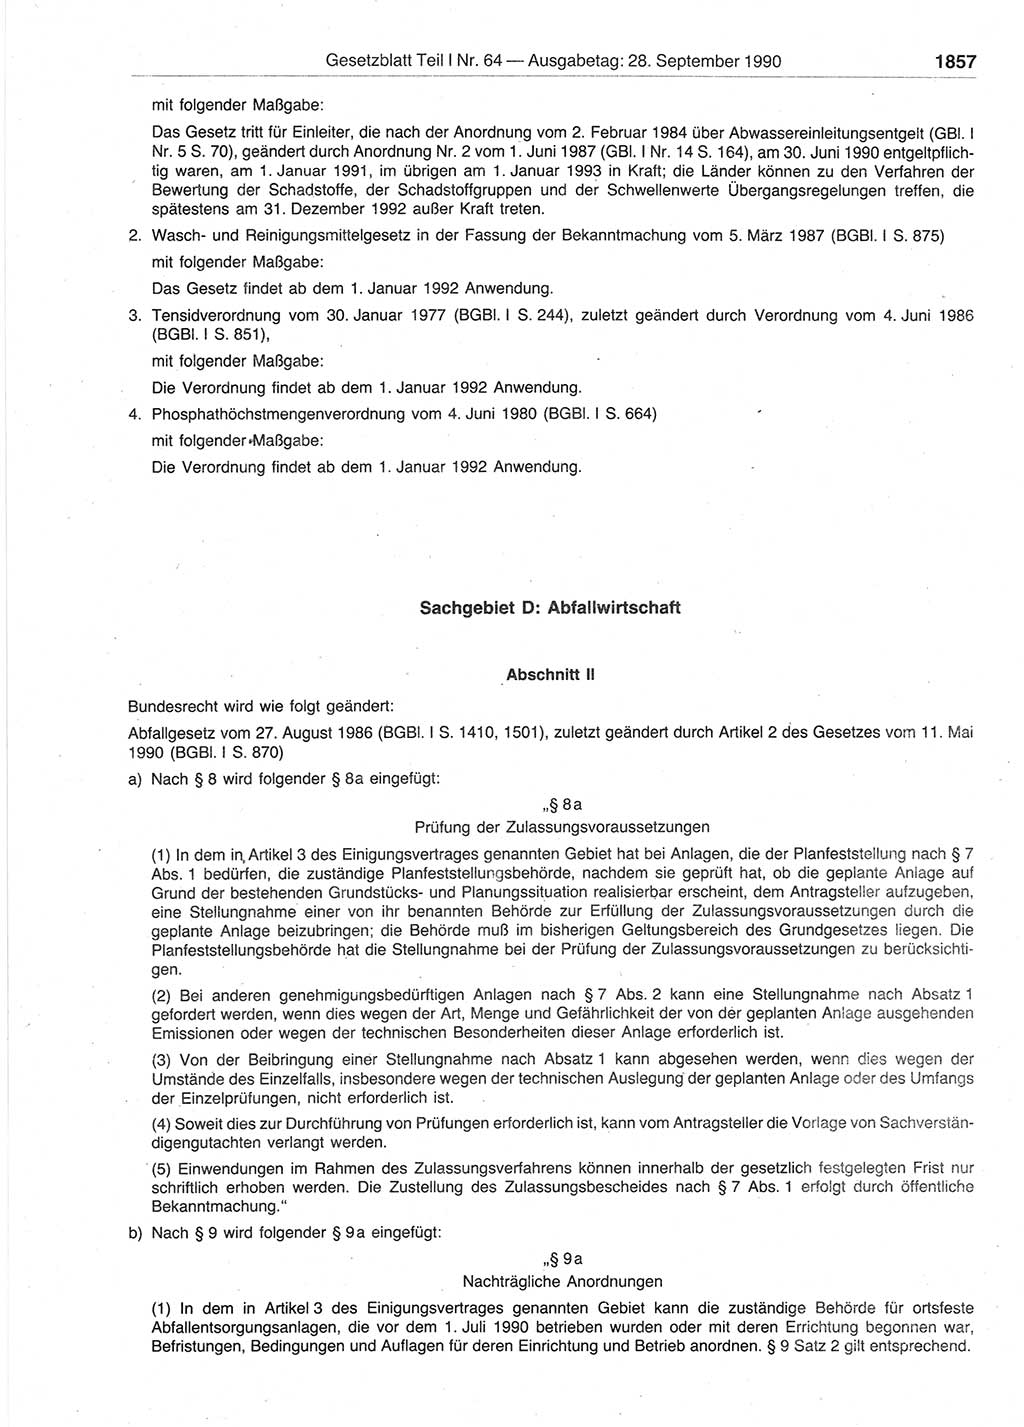 Gesetzblatt (GBl.) der Deutschen Demokratischen Republik (DDR) Teil Ⅰ 1990, Seite 1857 (GBl. DDR Ⅰ 1990, S. 1857)